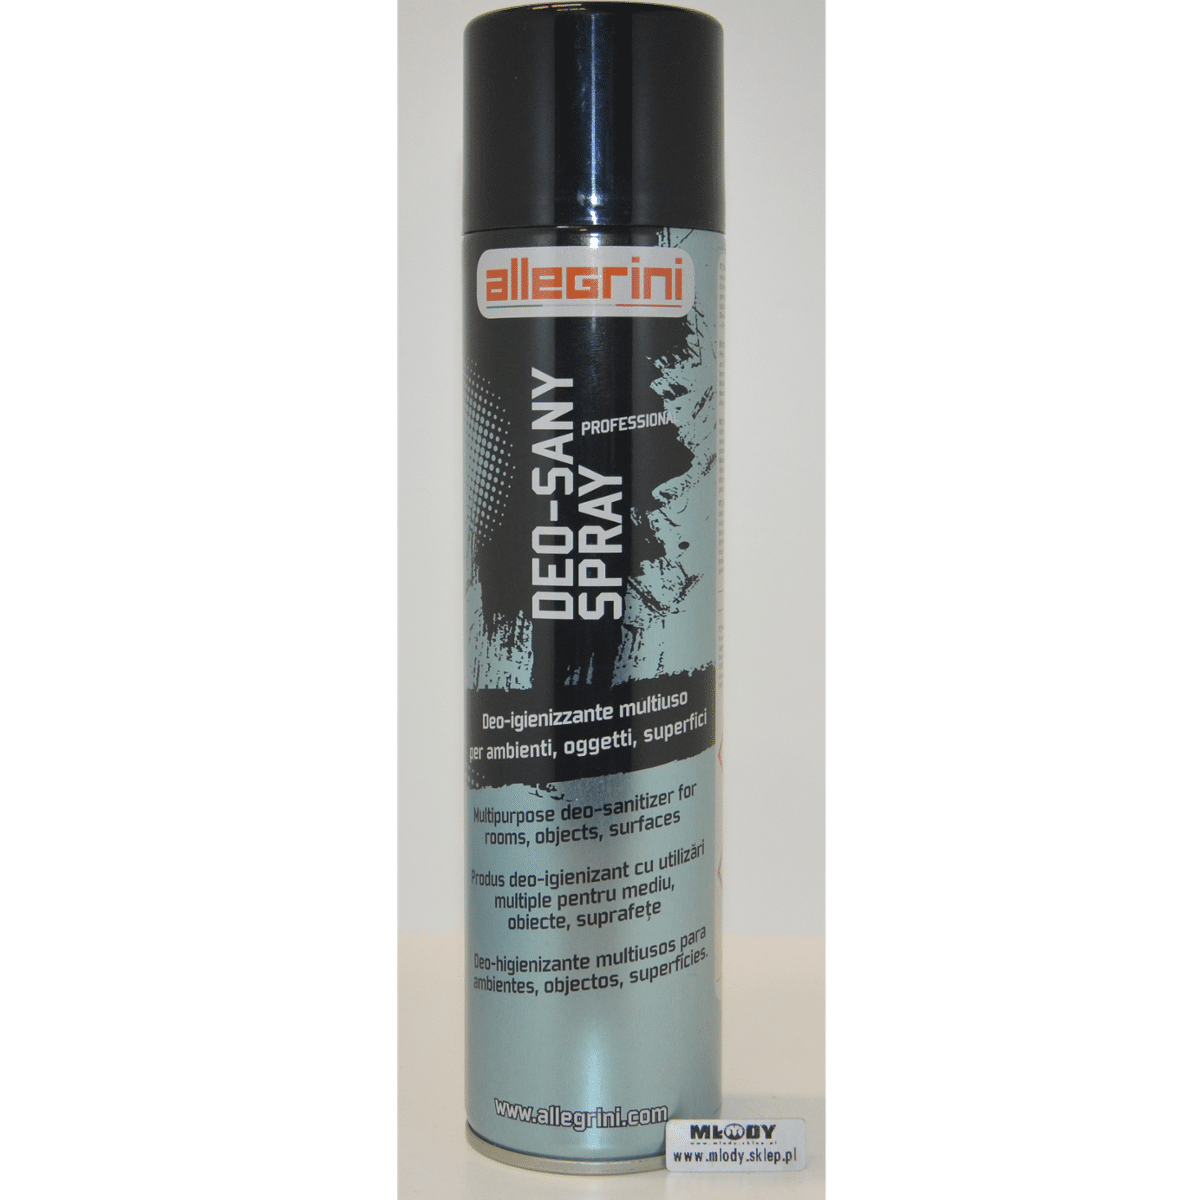 ALLEGRINI Deo Sany Spray 400ml Wielofunkcyjny Preparat Neutralizujący Odświeżający i Odkażający